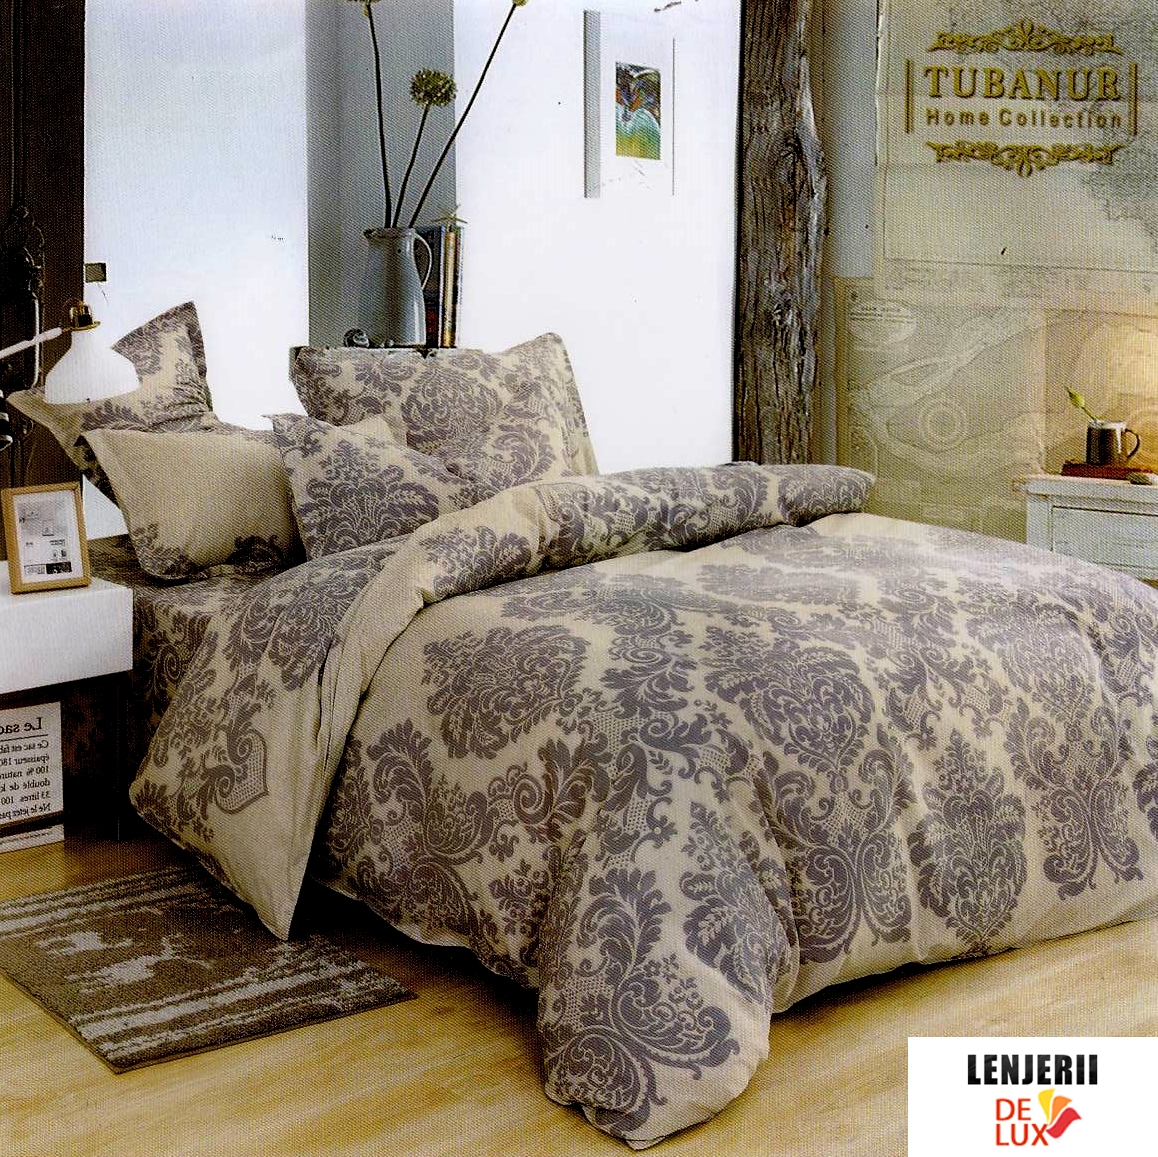 ceașcă Nouălea Barry  Lenjerie de pat pentru un dormitor elegant din bumbac satinat 6 piese |  Lenjerii-DeLux.ro